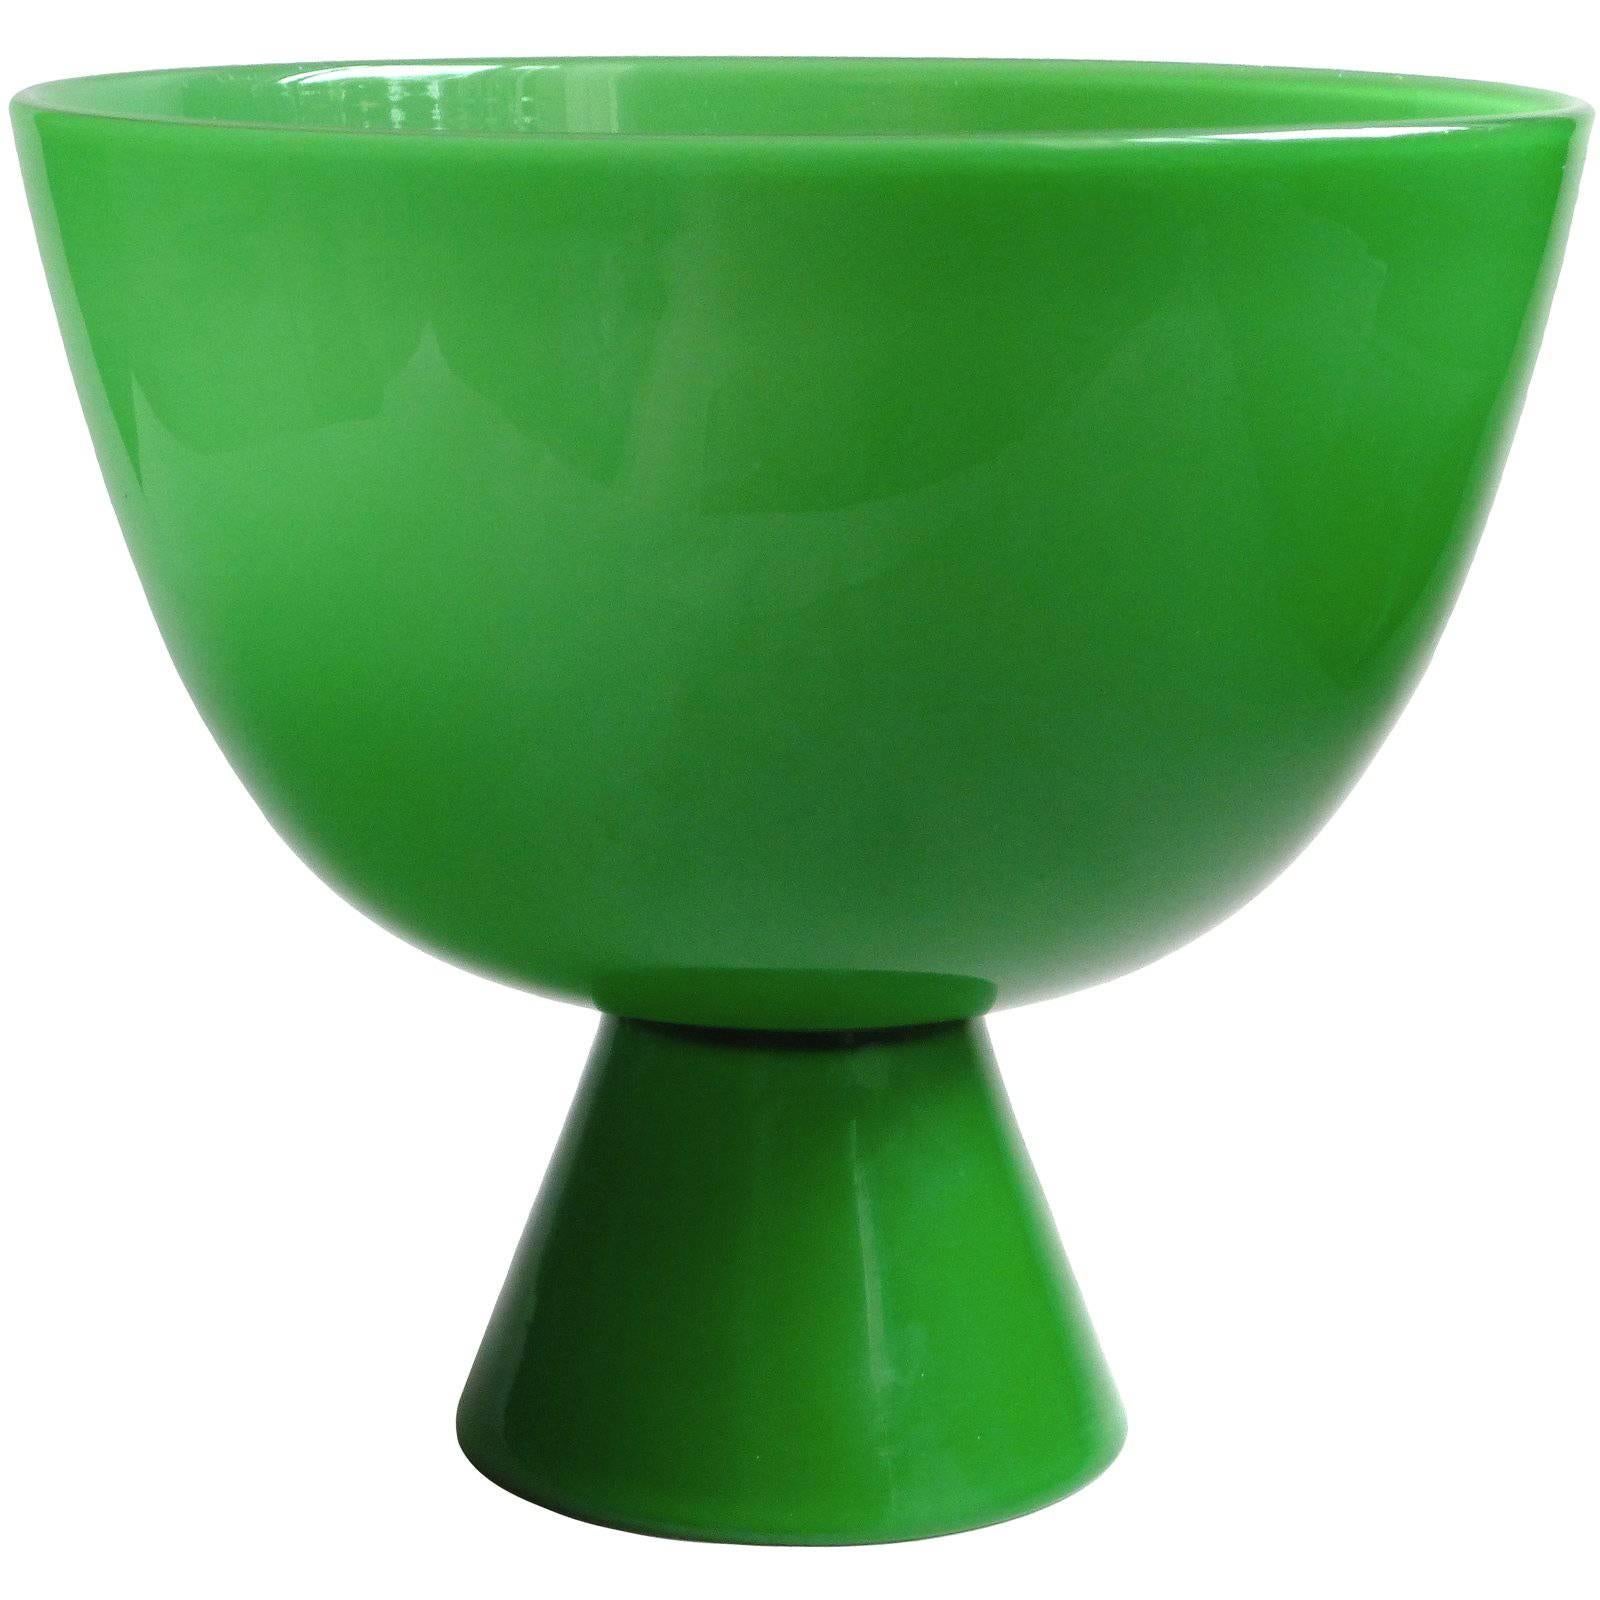 Murano Emerald Green Italian Art Glass Centerpiece Compote Bowl Vase